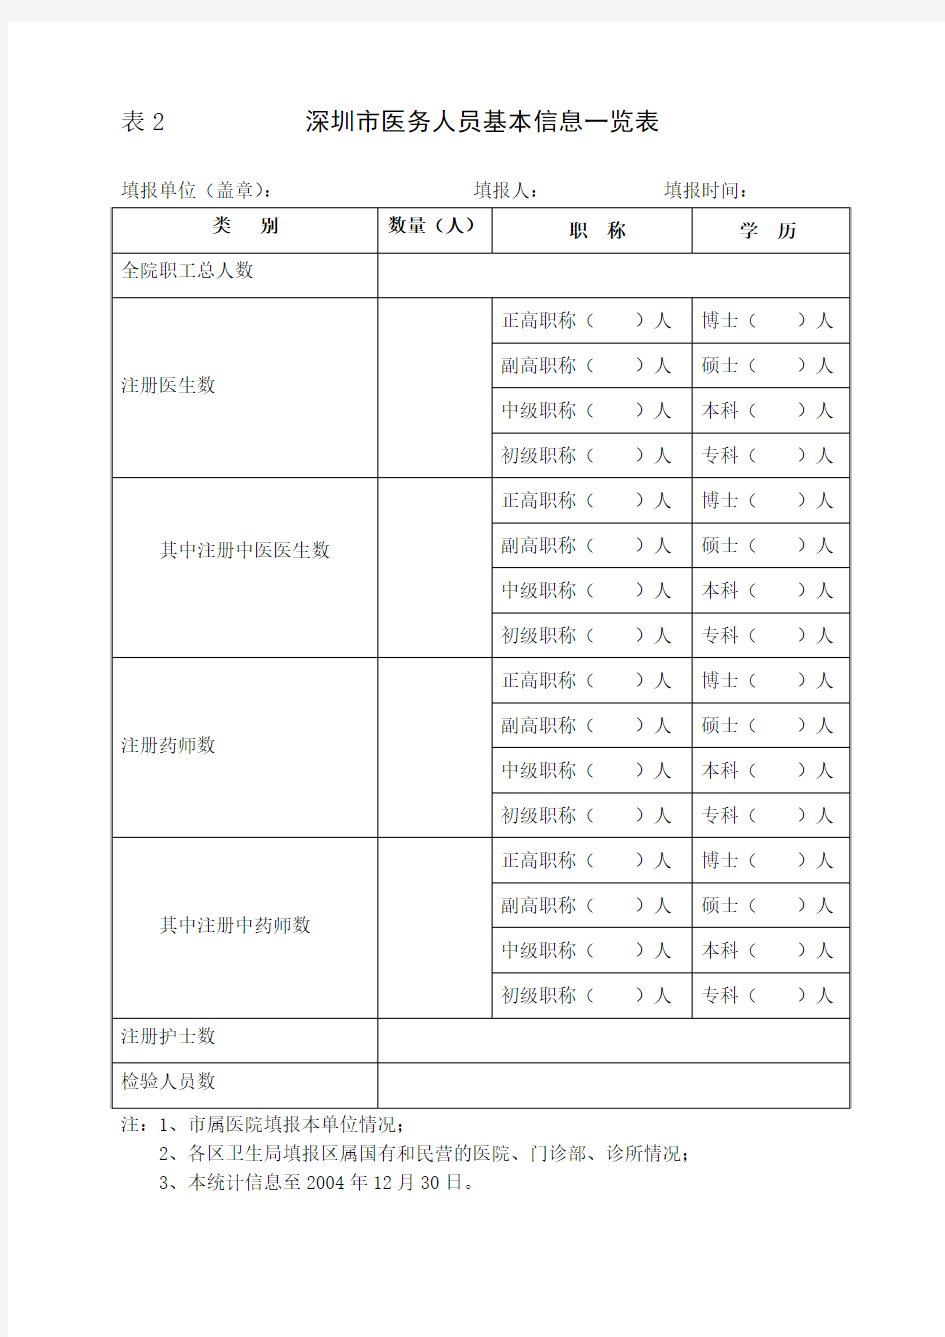 深圳市中医医疗机构基本信息一览表(精)